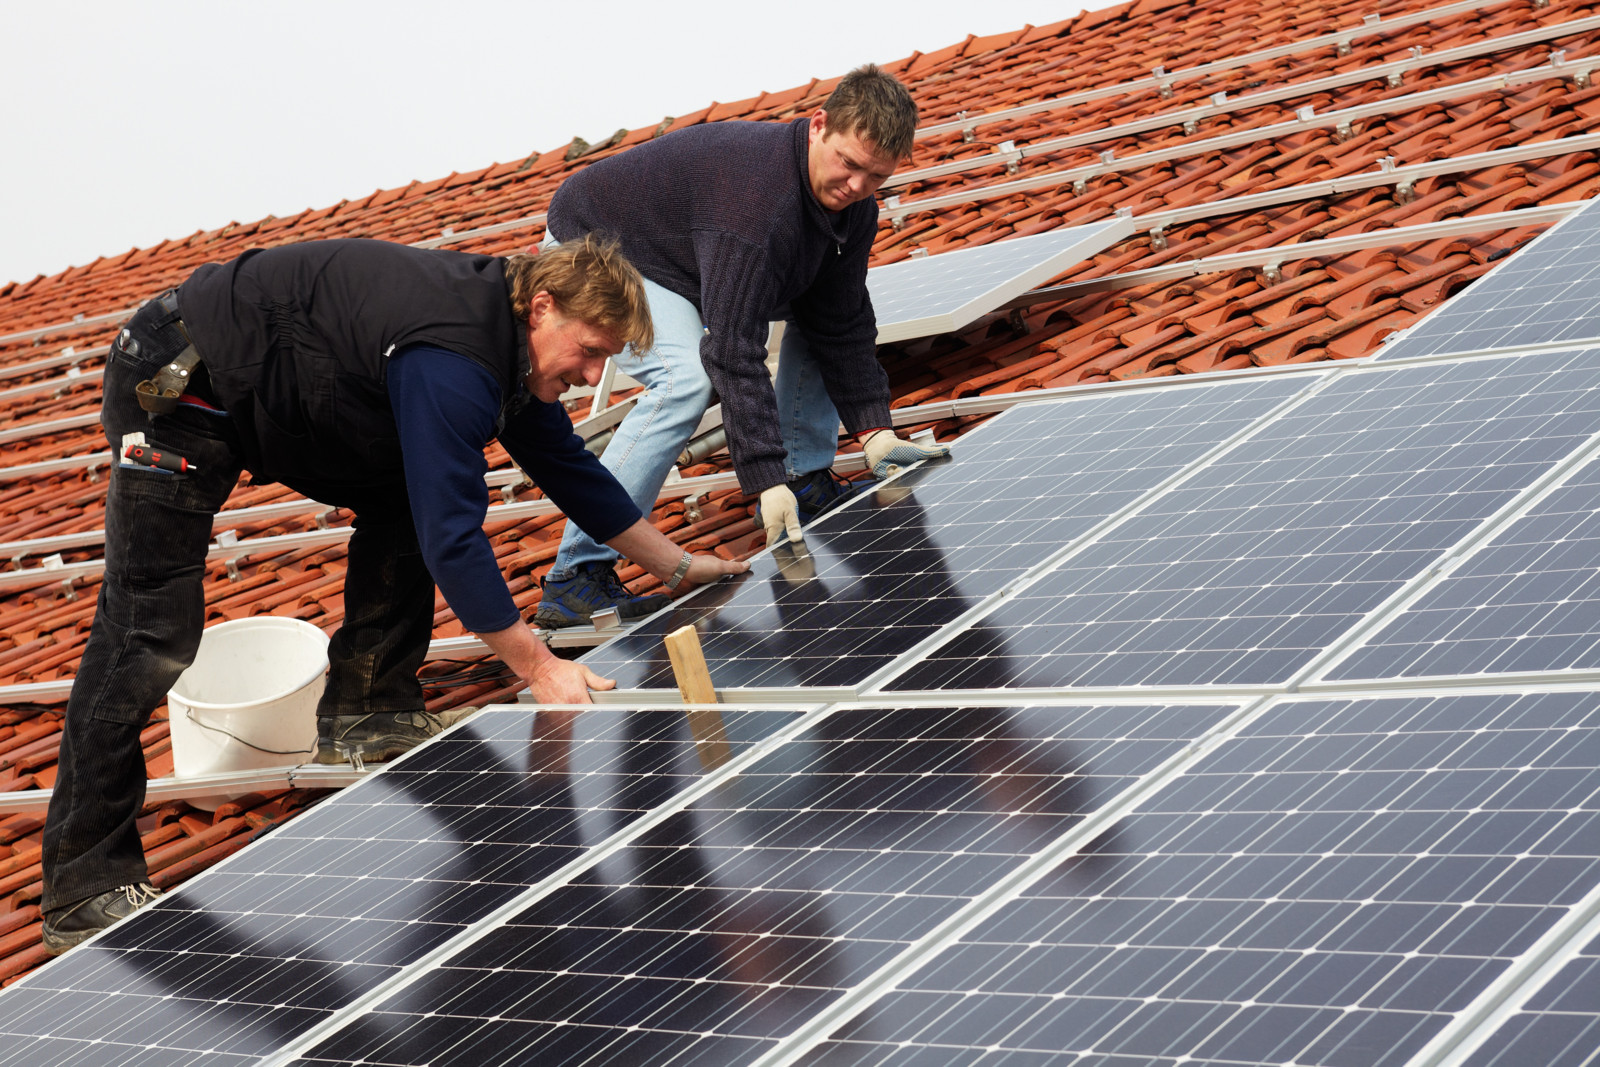 Dringend gesucht: Dachdecker, die Photovoltaikanlagen montieren können.